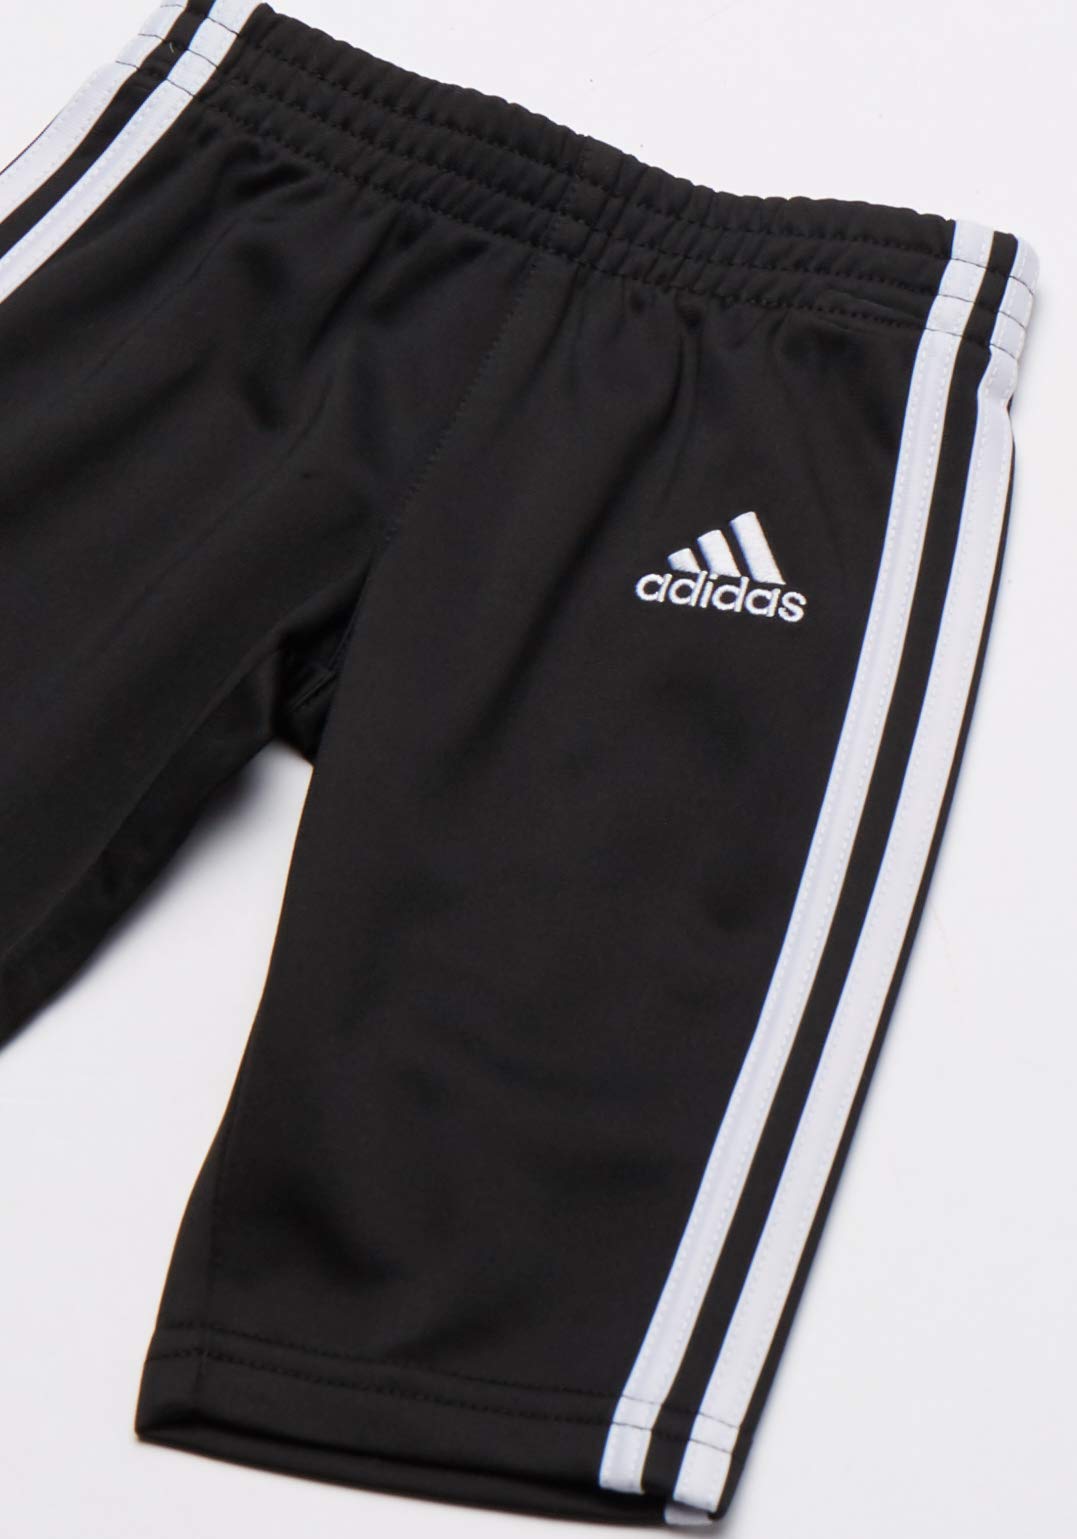 adidas Boys' Tricot Jacket & Pant Clothing Set